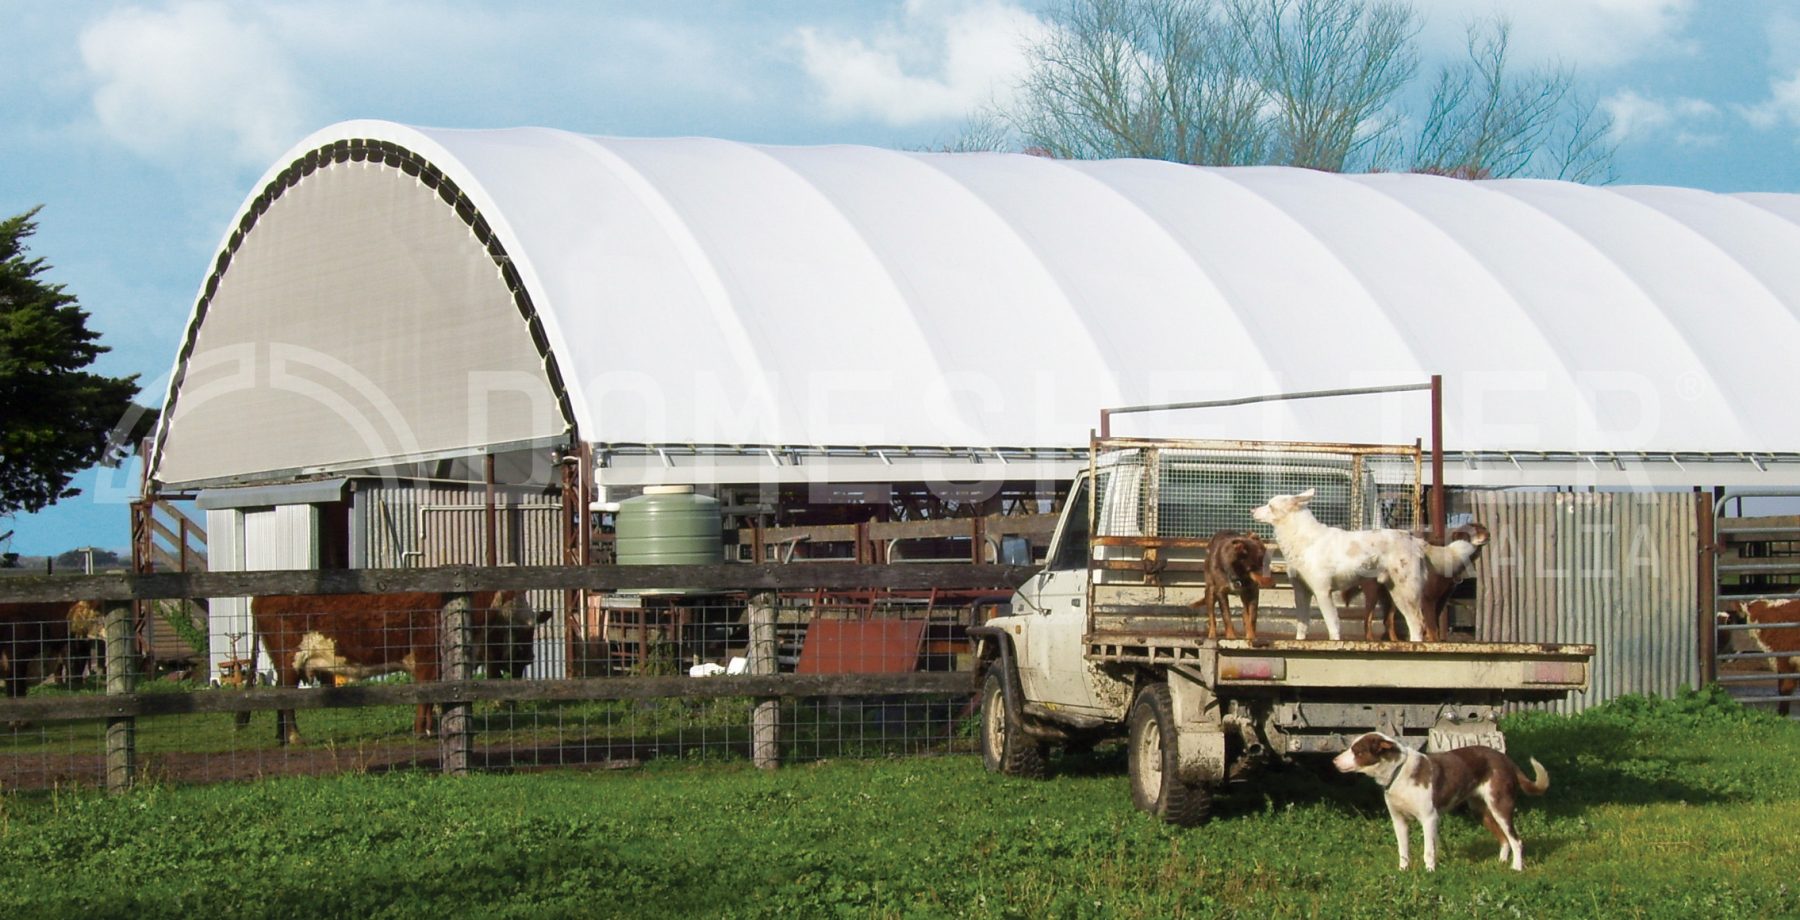 agriculture shelter shed alternative